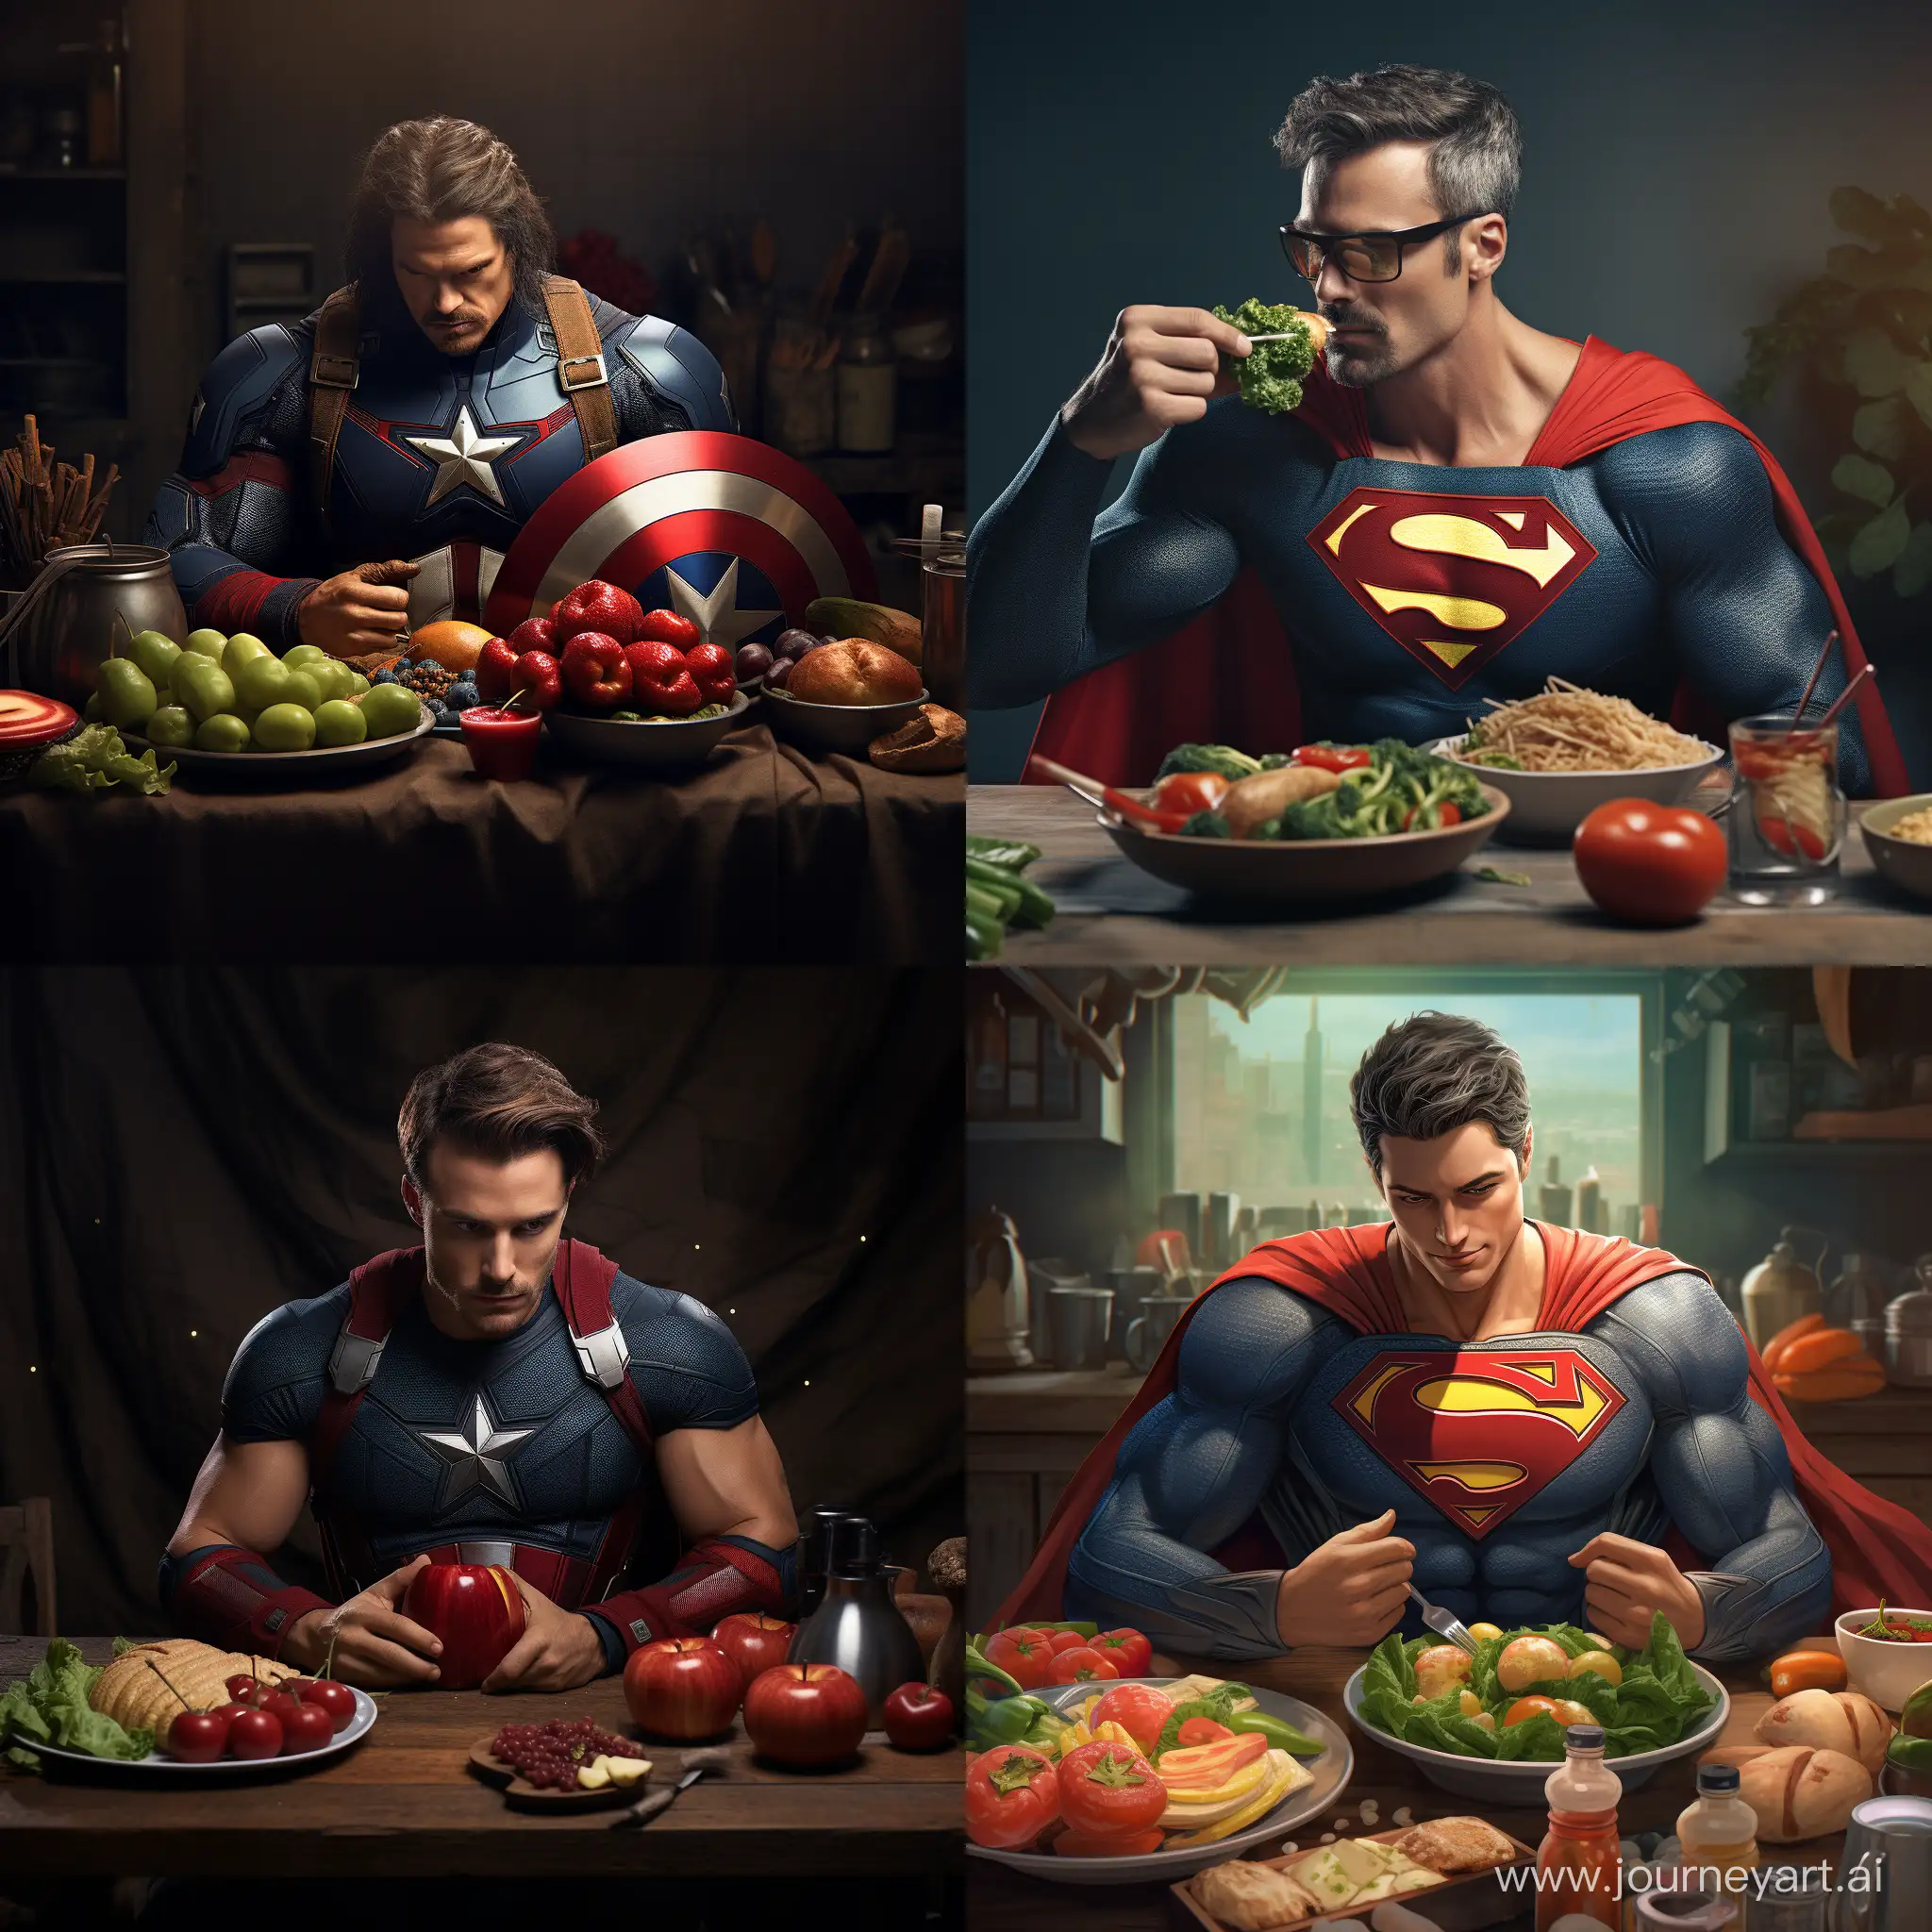 NutrientFueled-Superhero-PowerBoosting-Healthy-Eating